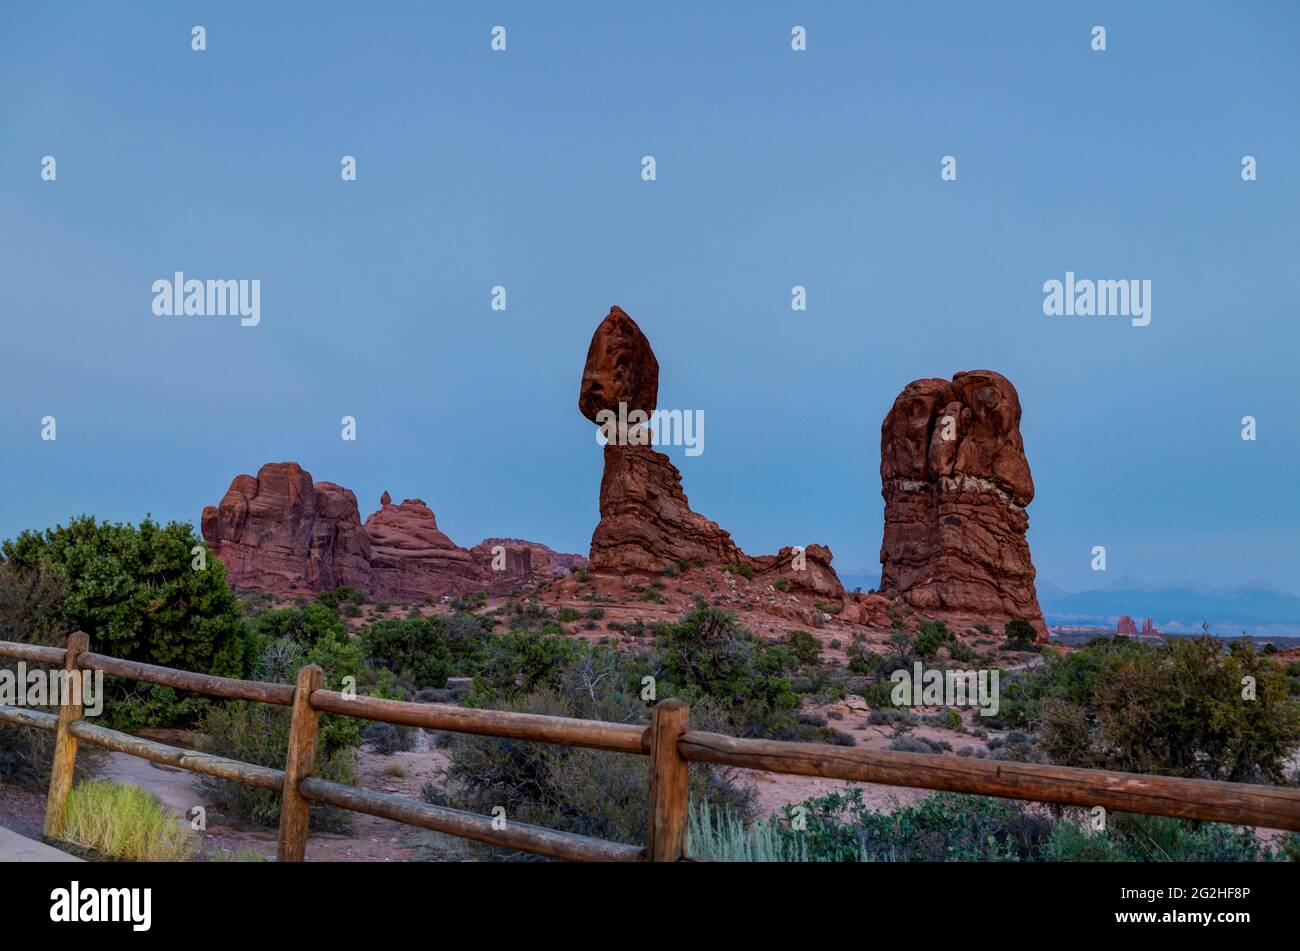 At the Balanced Rock - una massiccia roccia che poggia su uno stretto pilastro nel Parco Nazionale di Arches, vicino a Moab nello Utah, Stati Uniti Foto Stock